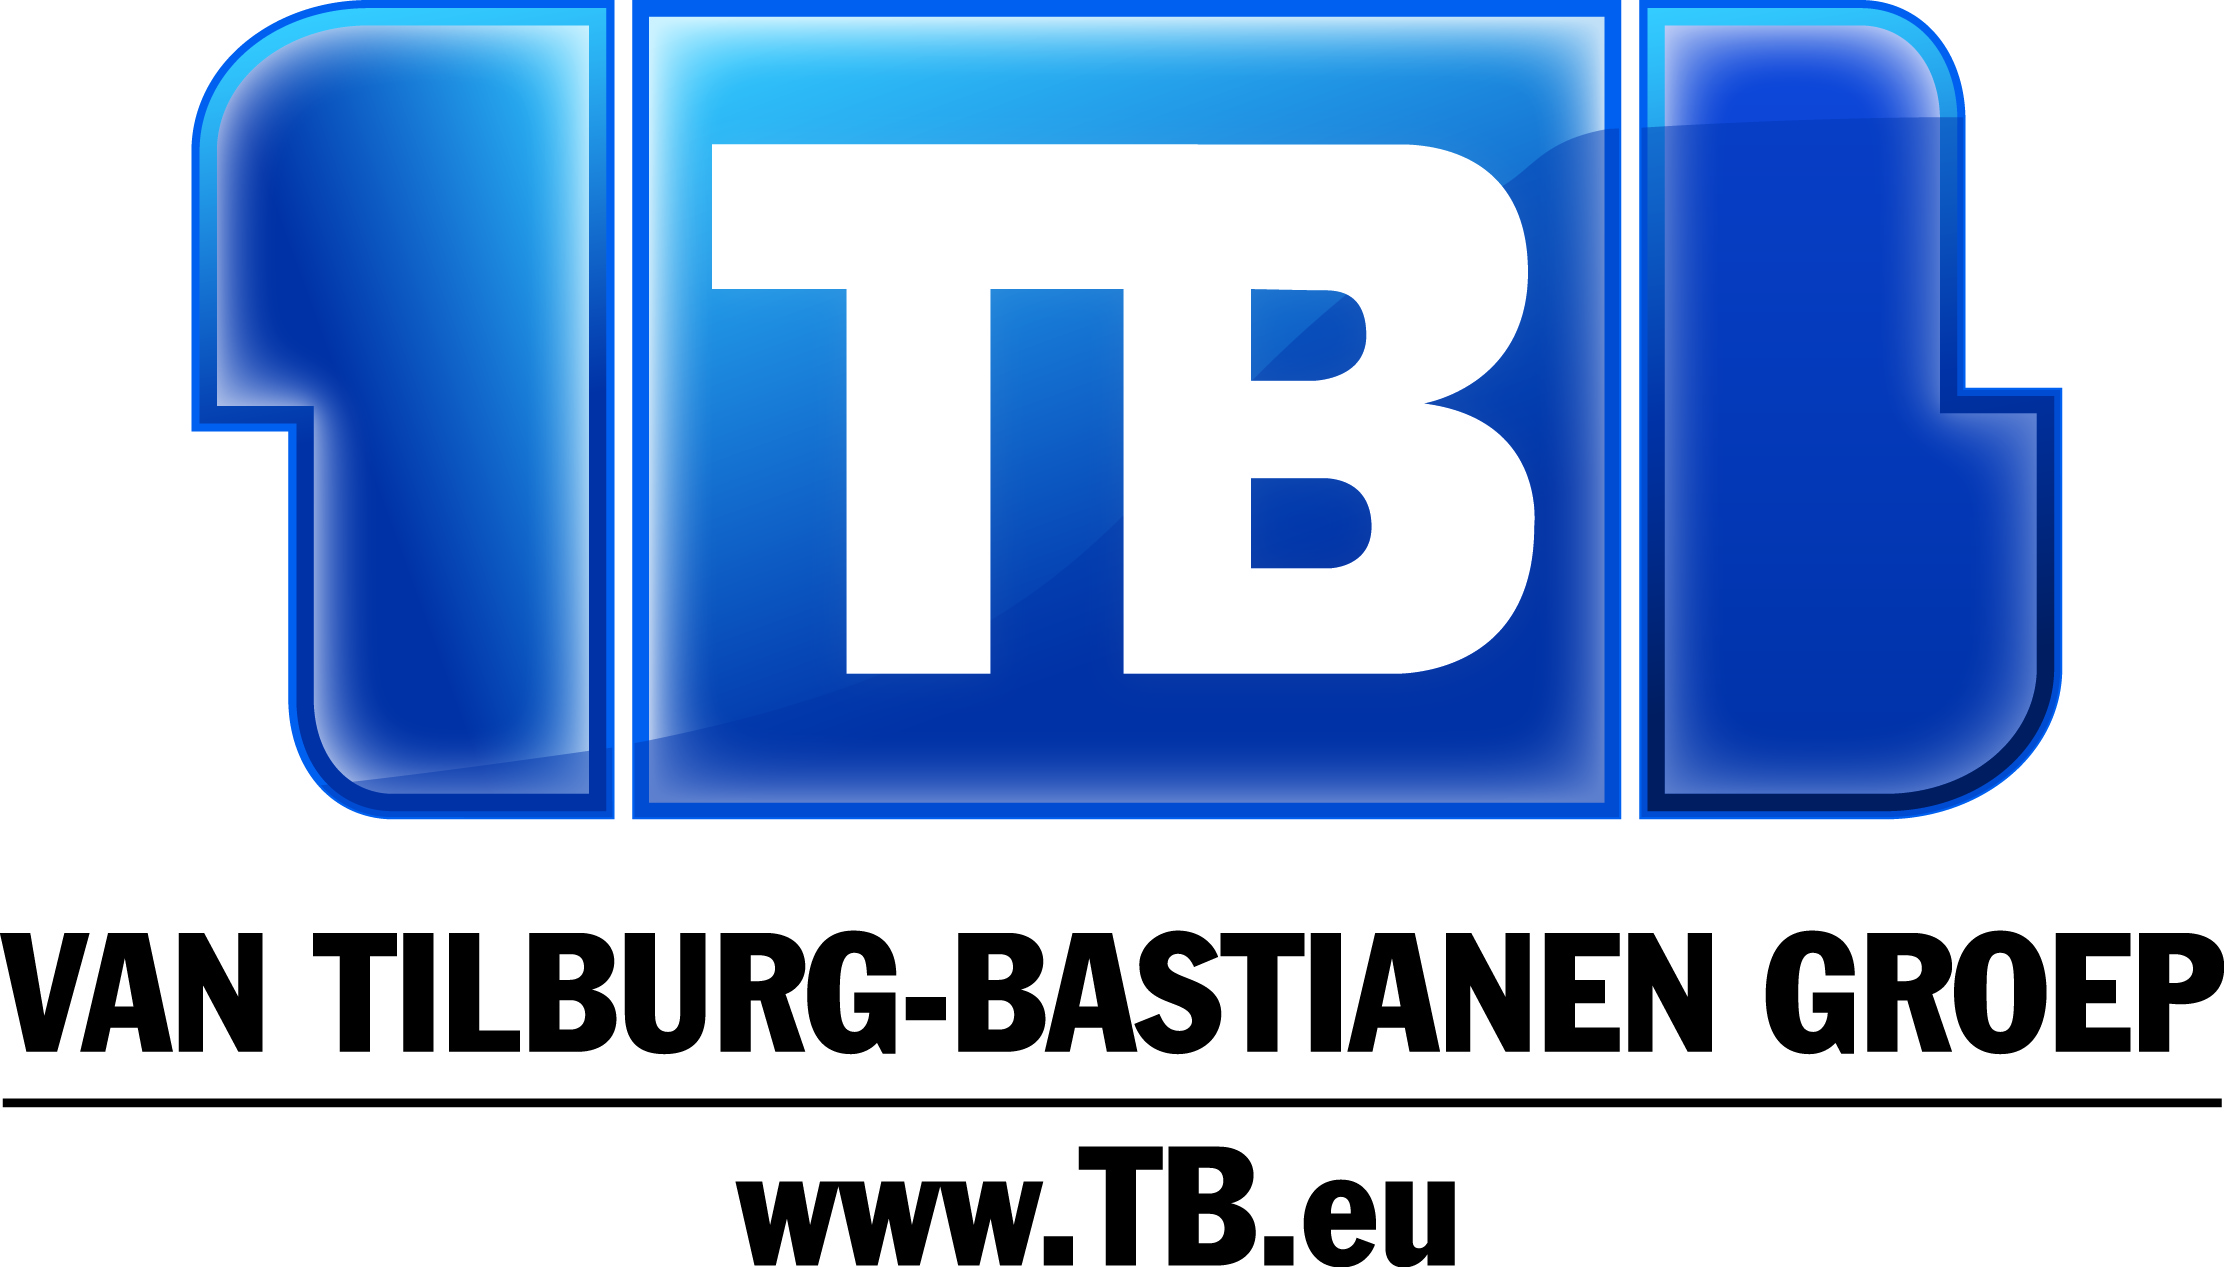 Van Tilburg-Bastianen Groep